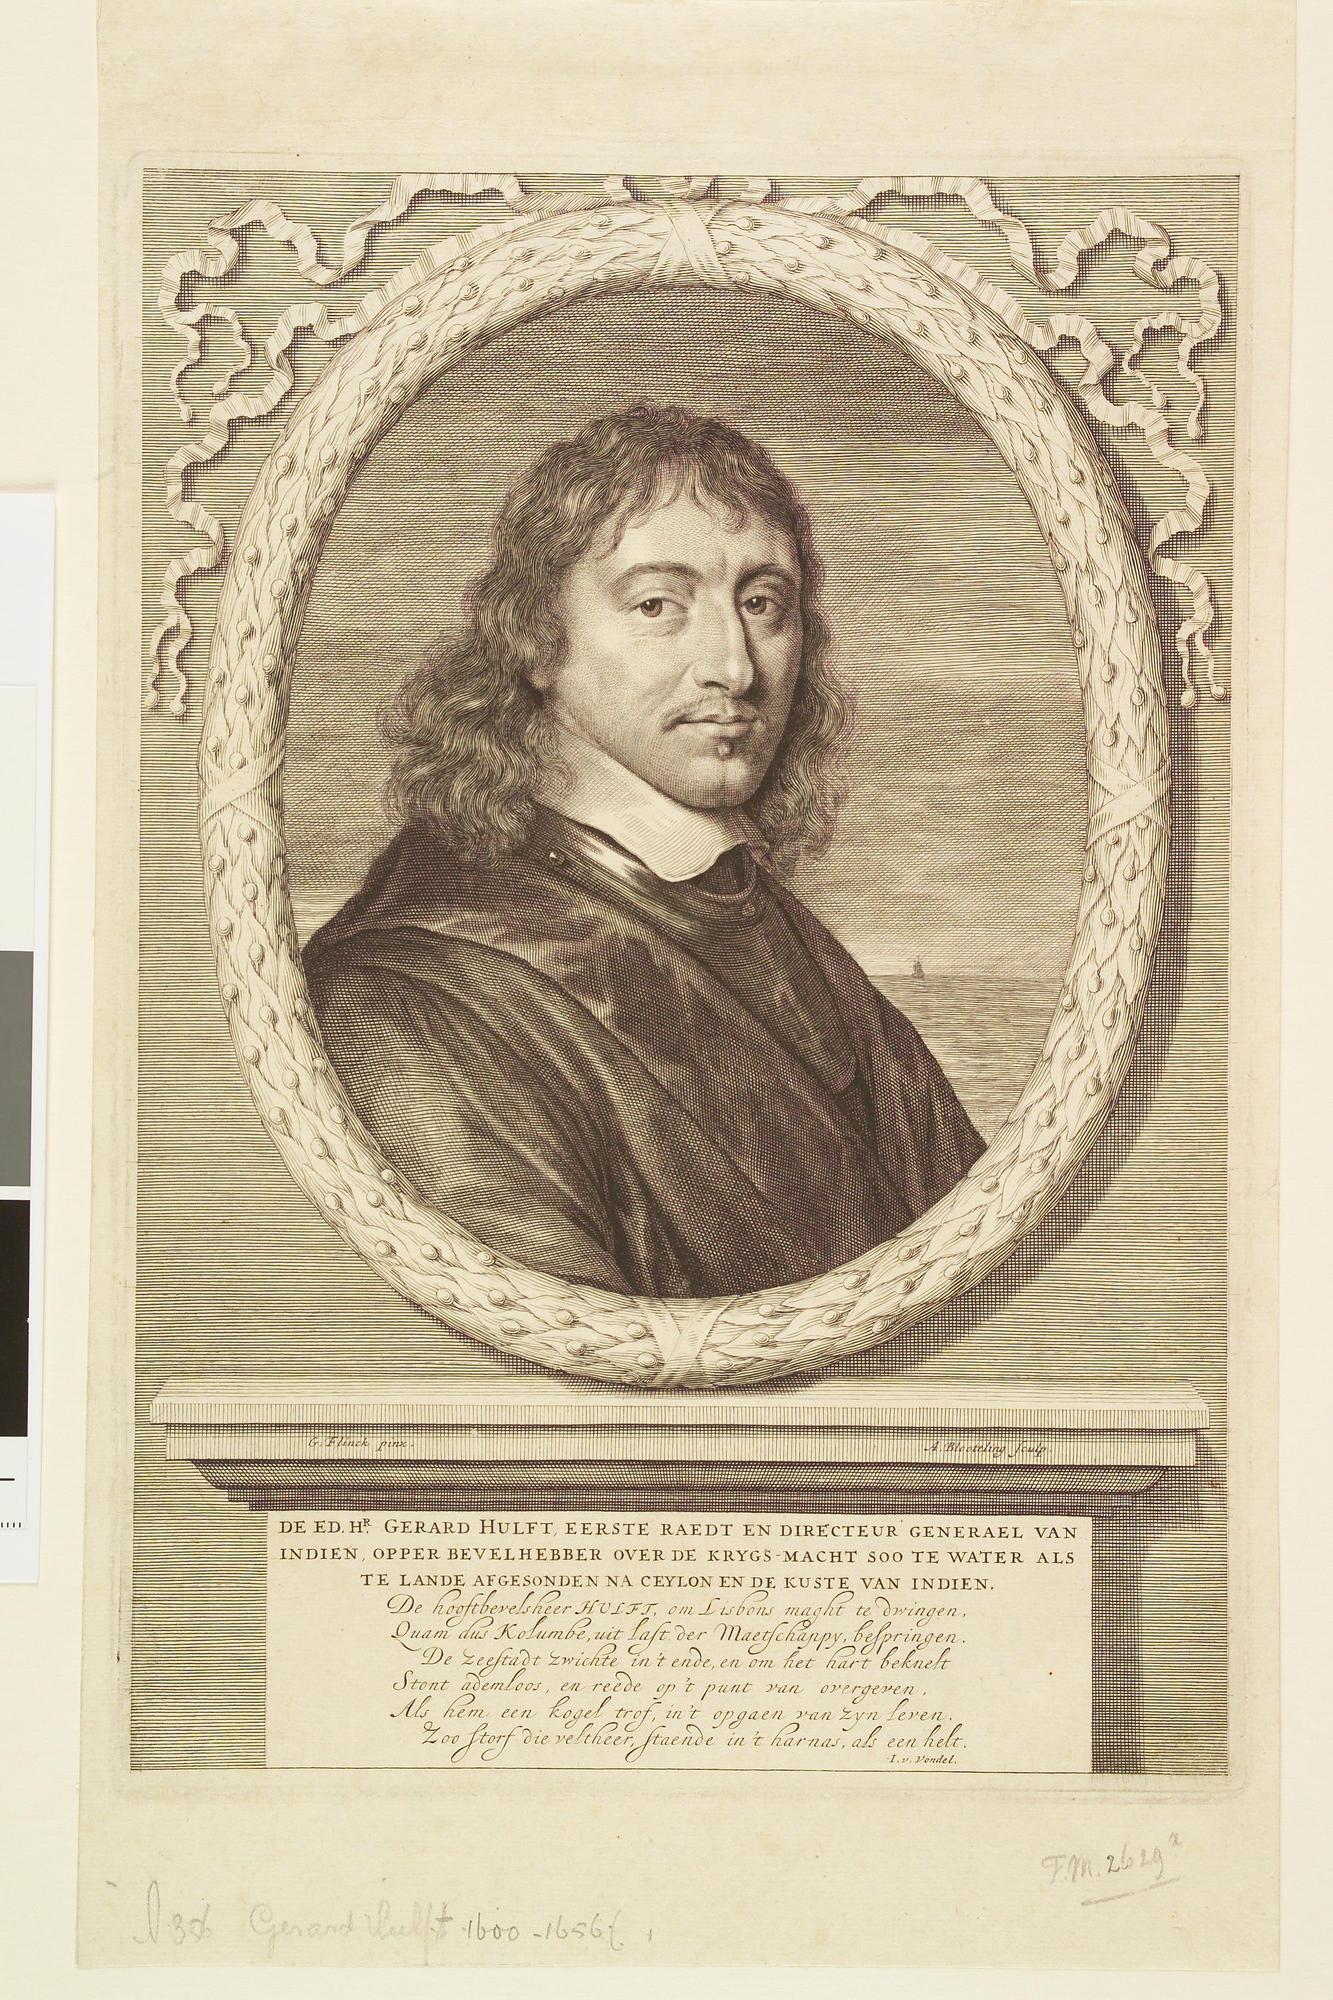 A.0356(34); Portret van Gerard Hulst (1600 - 1656), eerste raad en directeur-generaal van Indië, opperbevelhebber van de krijgsmacht naar India en Ceylon; prent